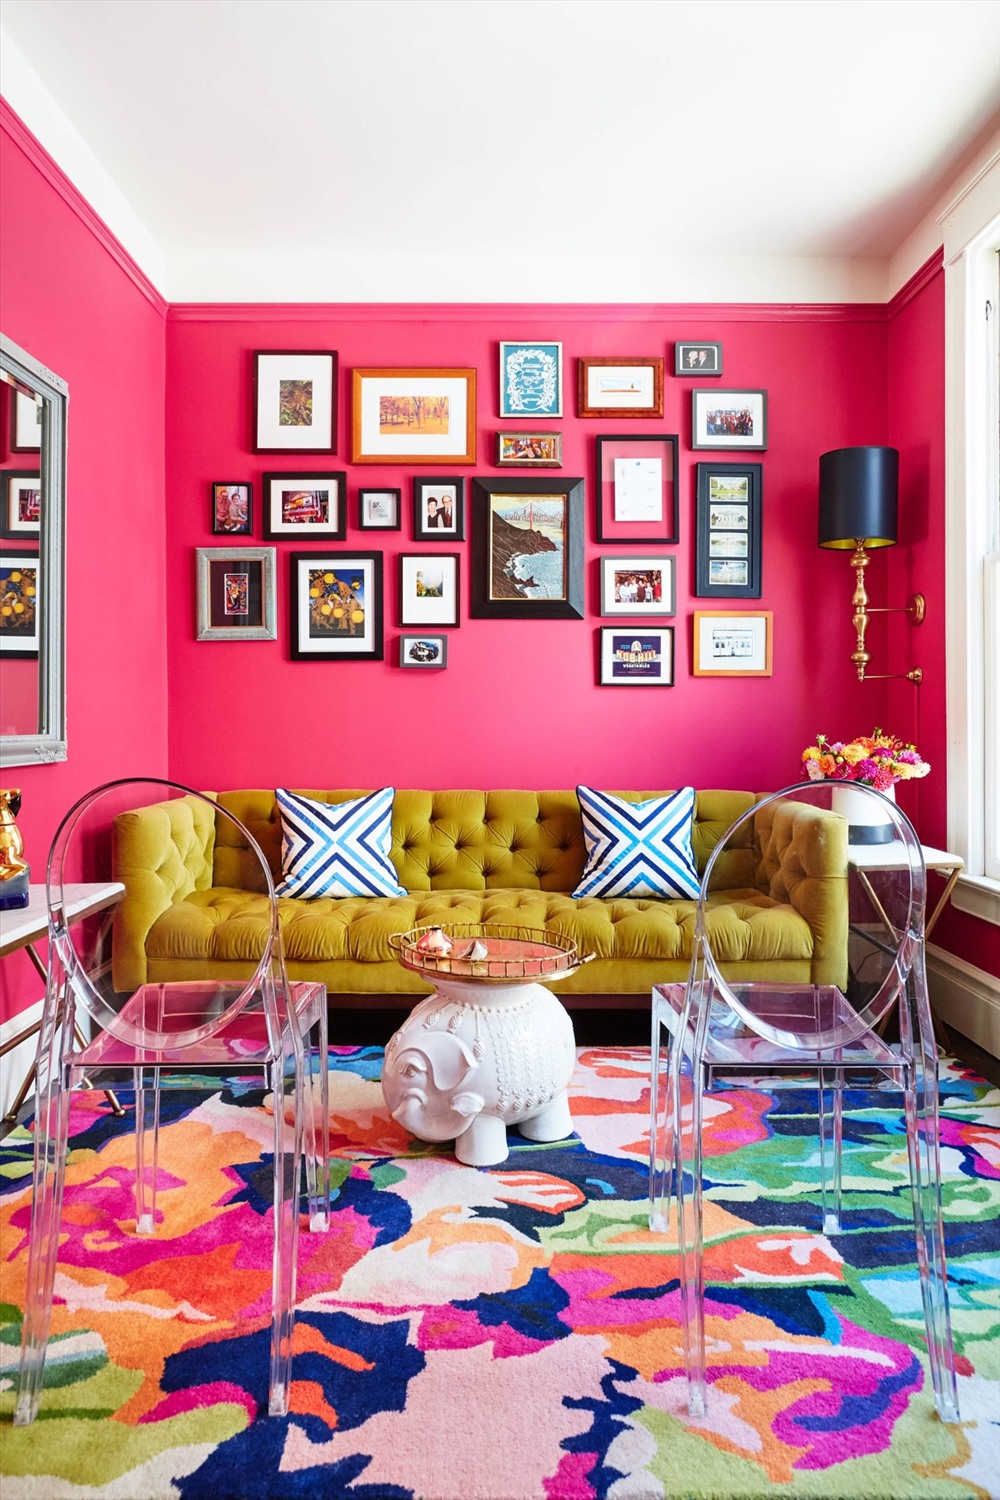 Một phòng khách ấm áp sinh động khác. Nó được trang trí nổi bật với tấm thảm lớn nhiều màu sắc để tăng thêm độ sinh động vui tươi.